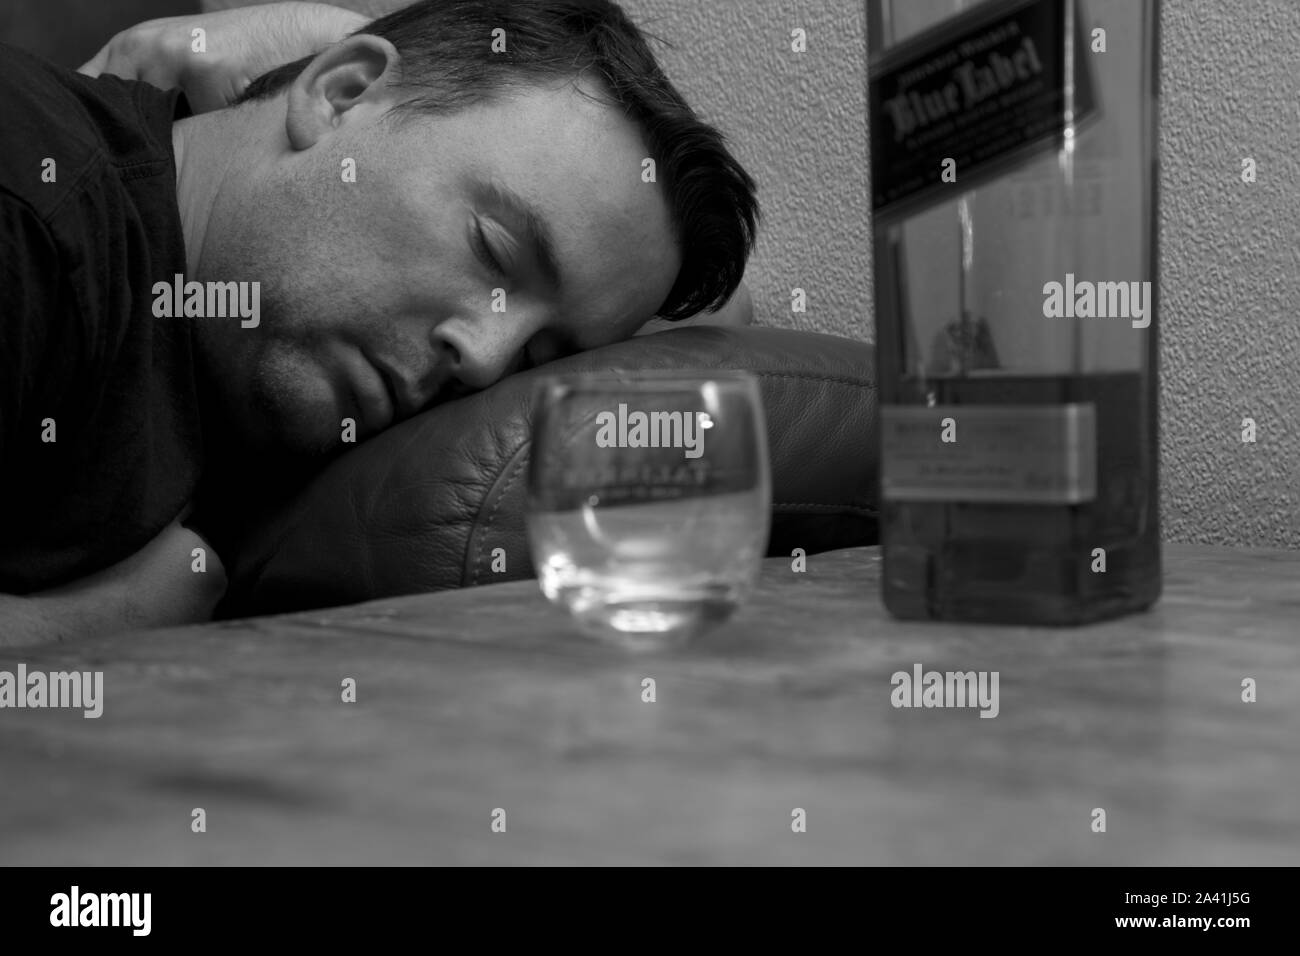 Eine bestandene aus Mann auf dem Sofa schlafen Neben eine Flasche Johnnie Walker Blue Label Whisky und eine leere Whisky Glas Stockfoto